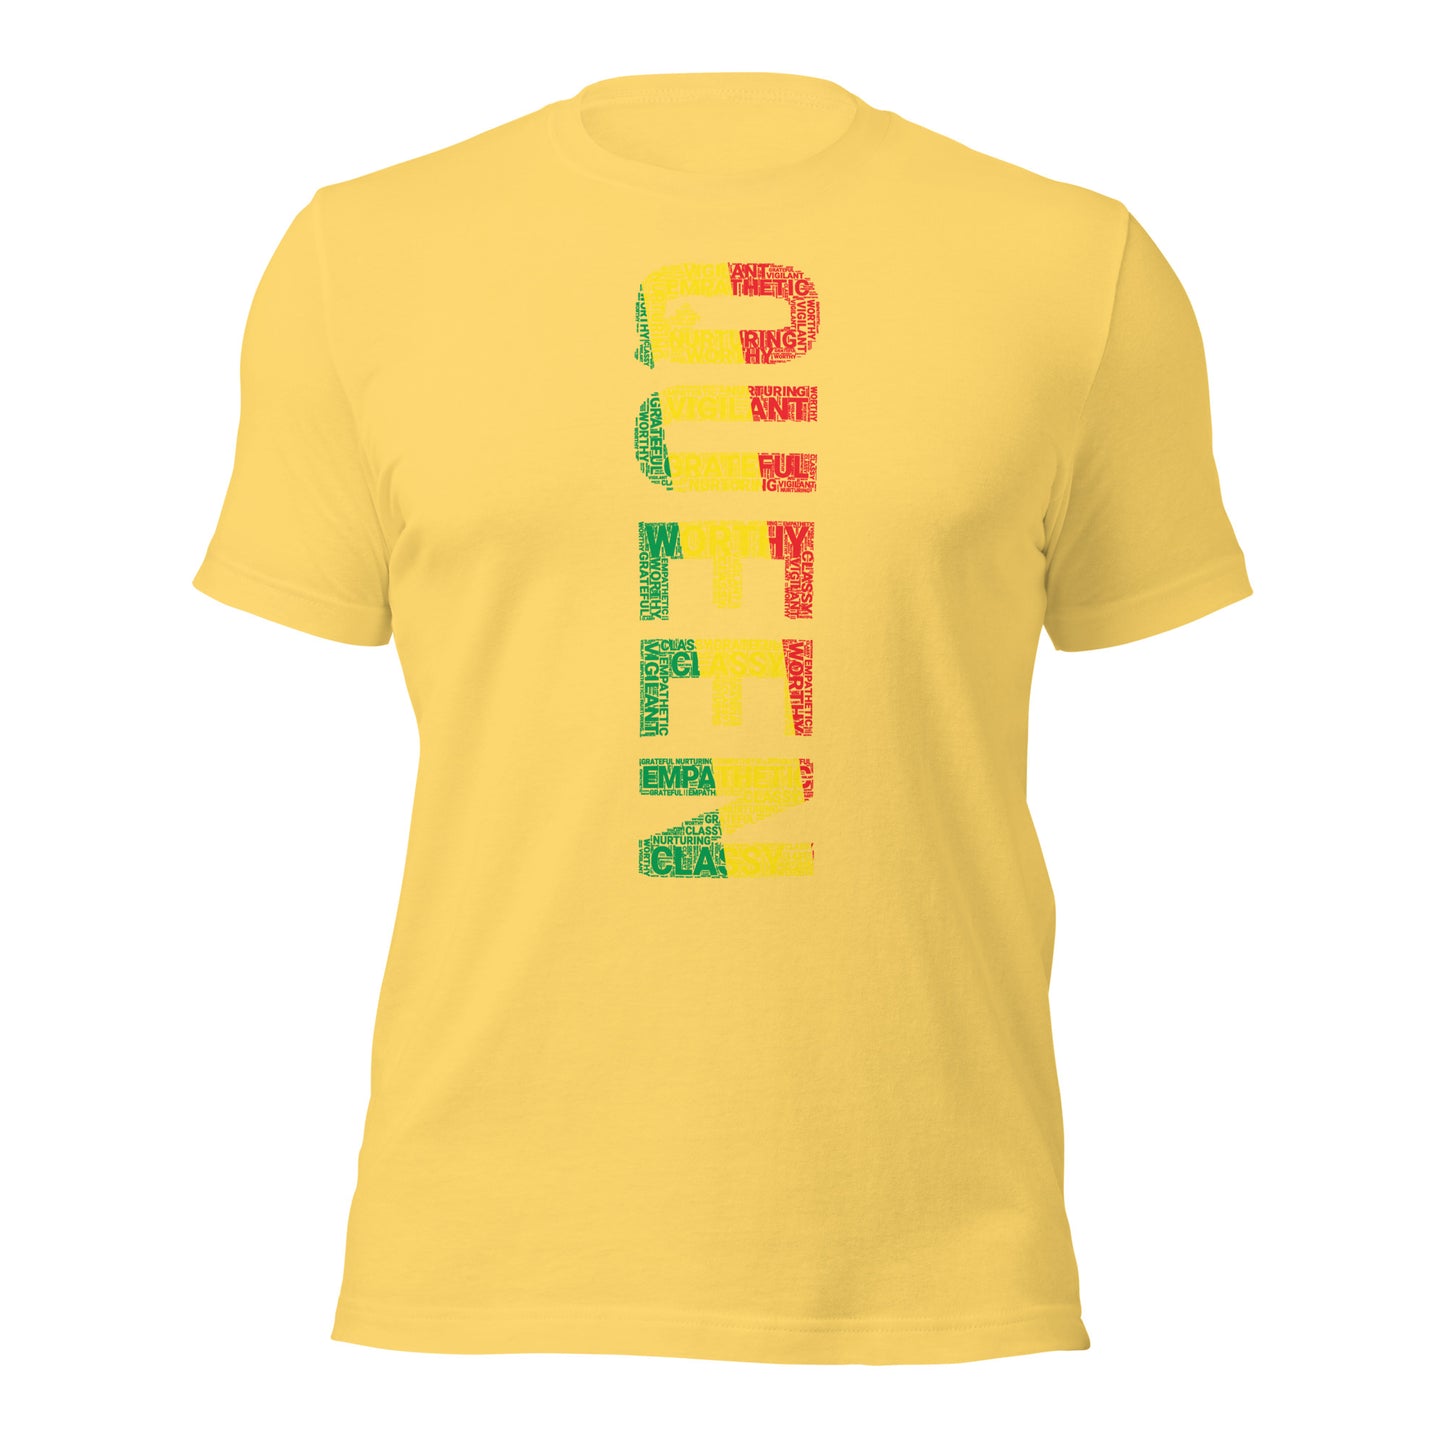 QUEEN (Vertical) Pan African Inspired Short-Sleeve Unisex T-Shirt